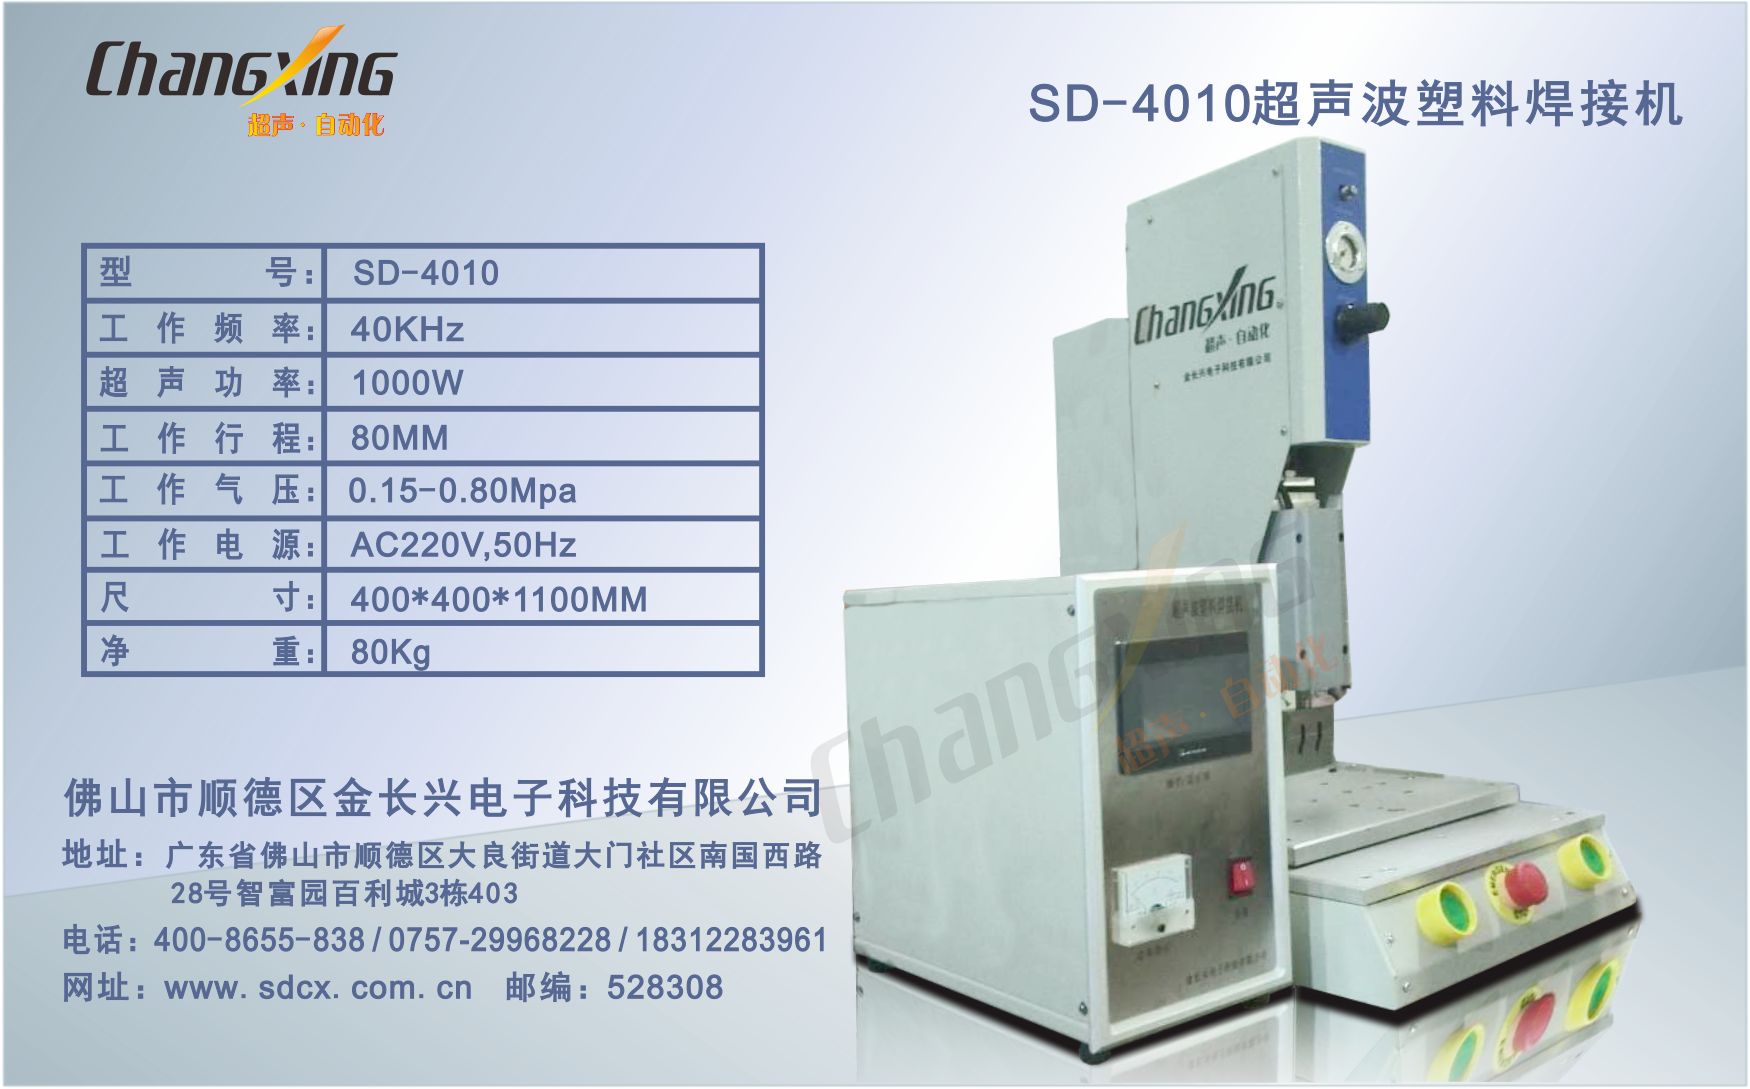 SD-4010超声波塑料焊接机(2)